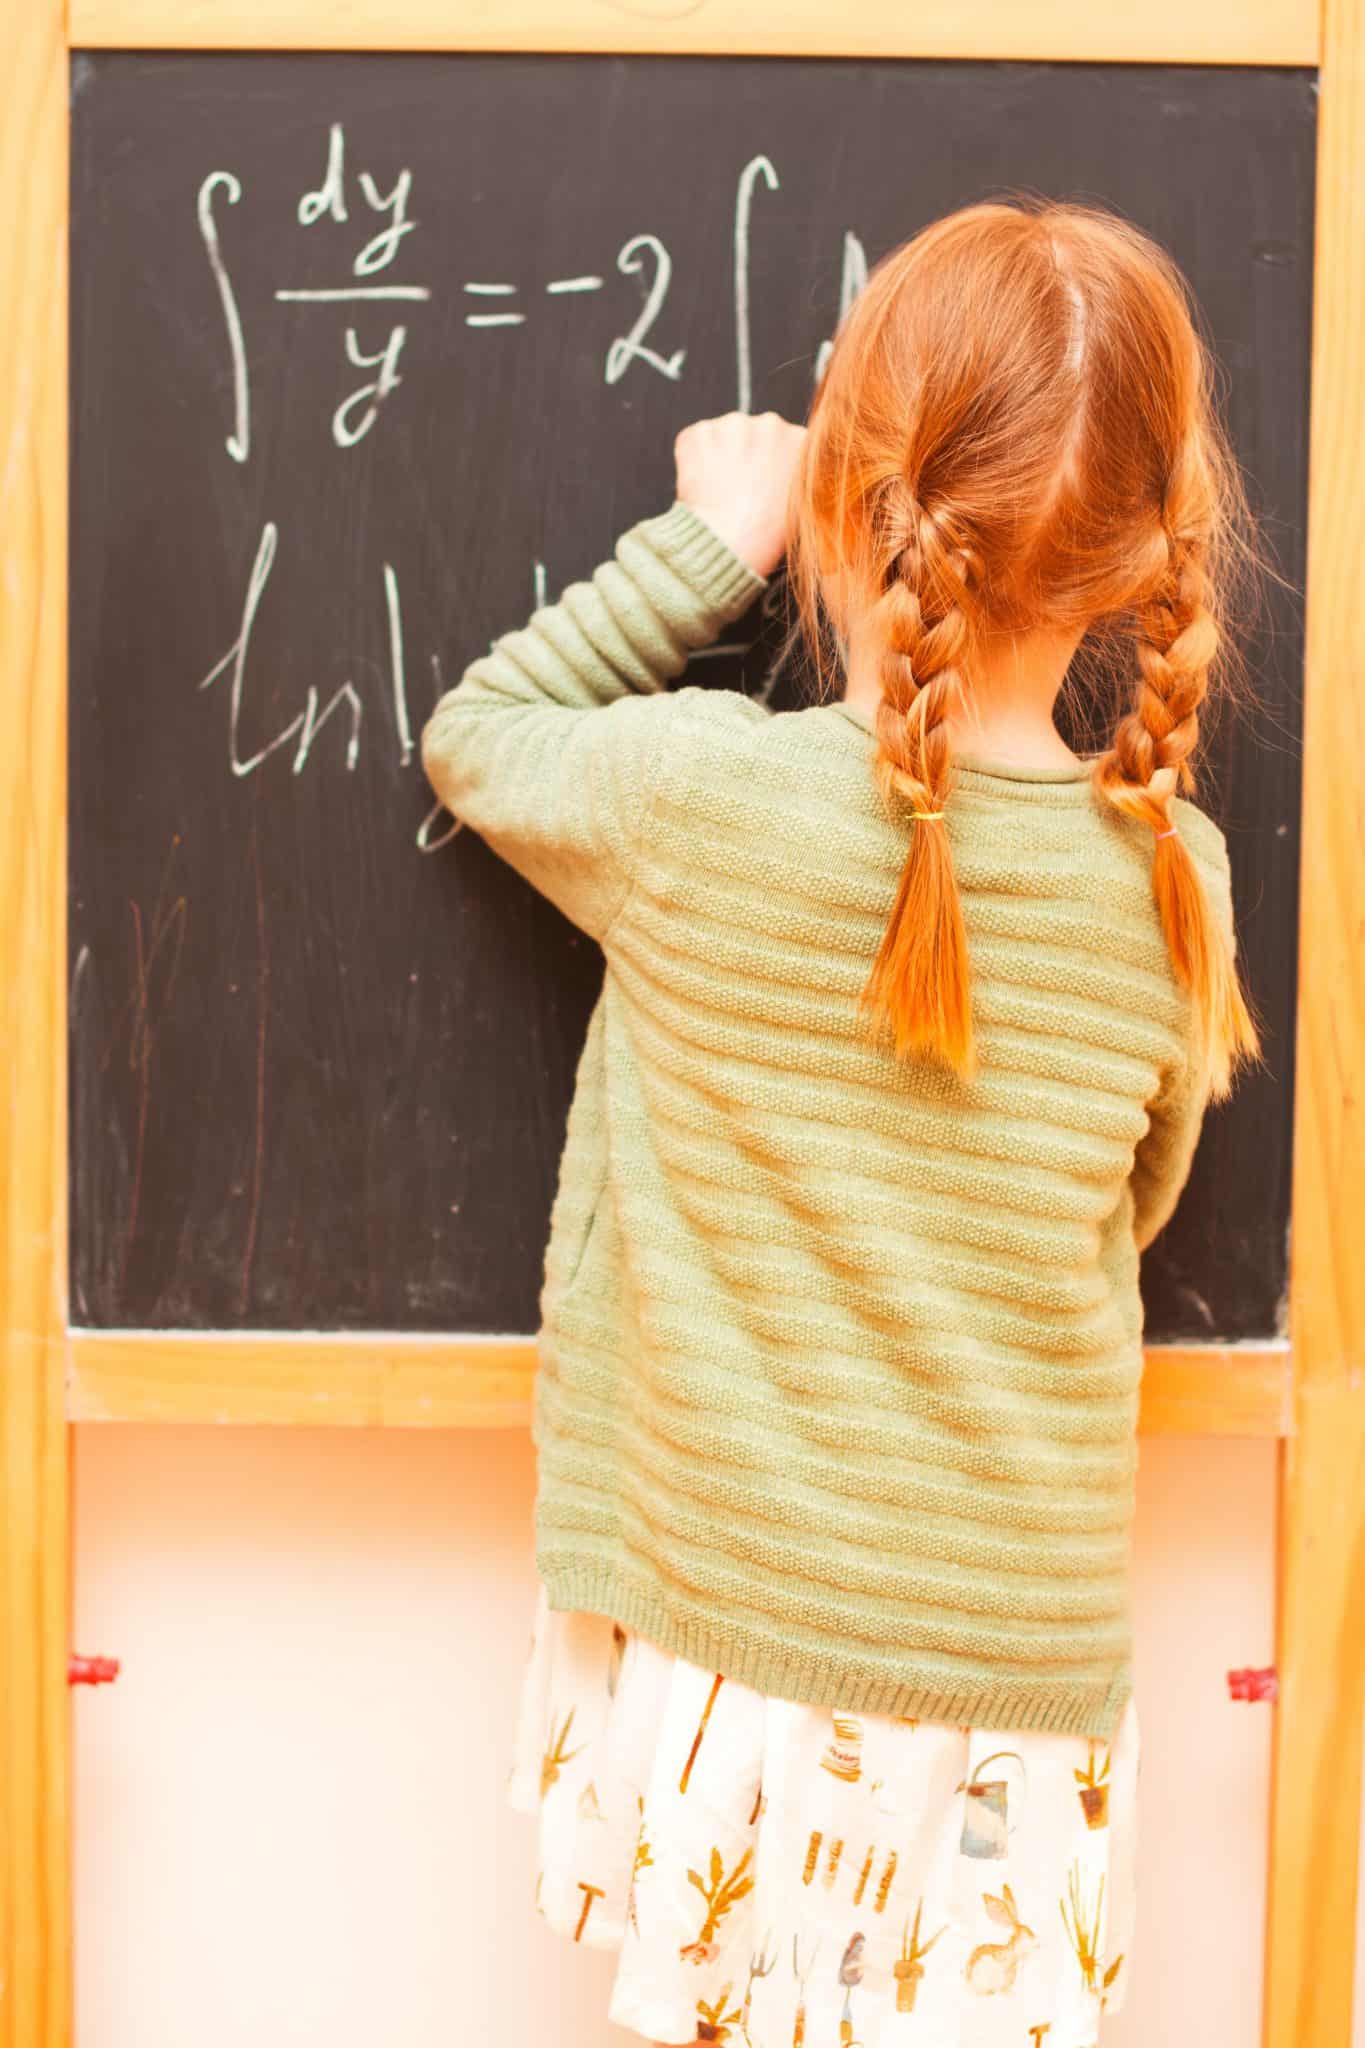 ילדה עם שתי צמות כותבת על לוח גיר